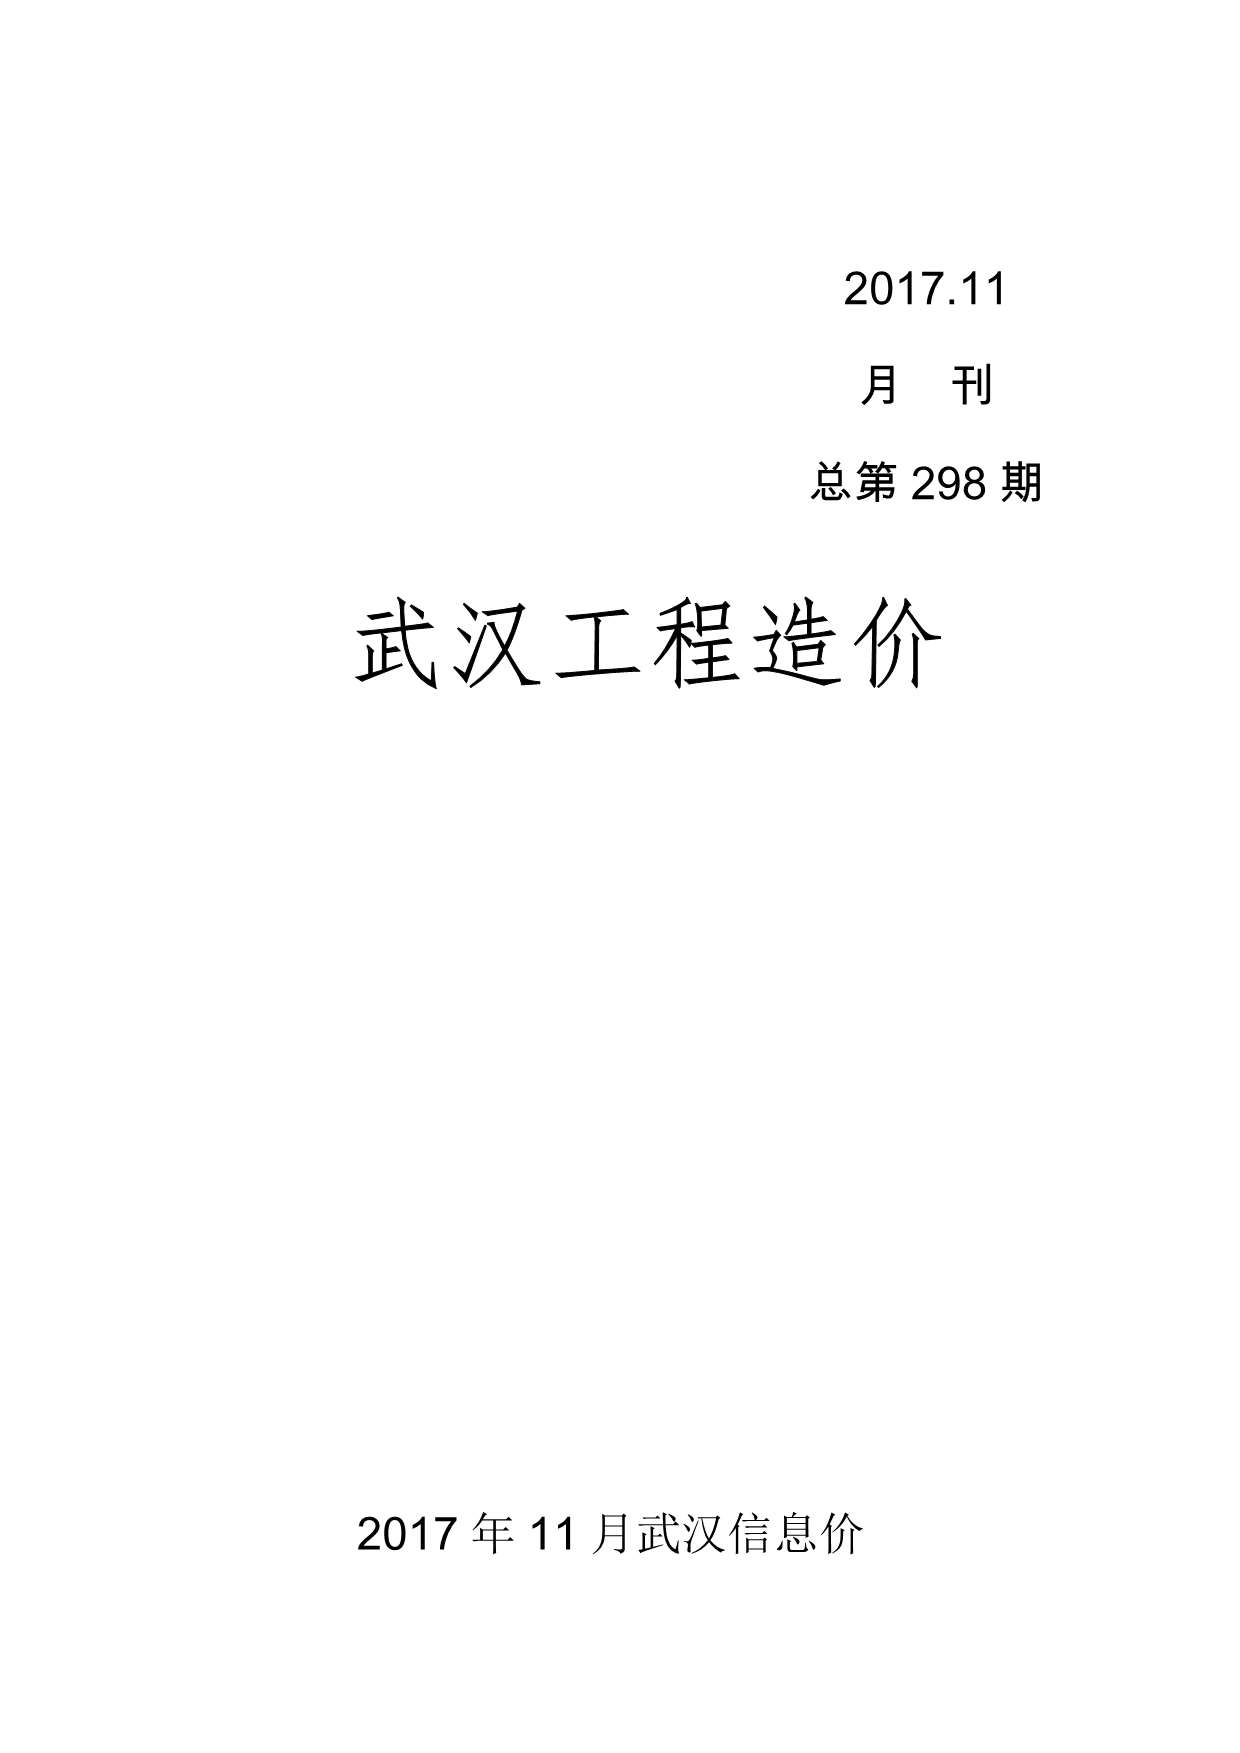 武汉市2017年11月材料信息价